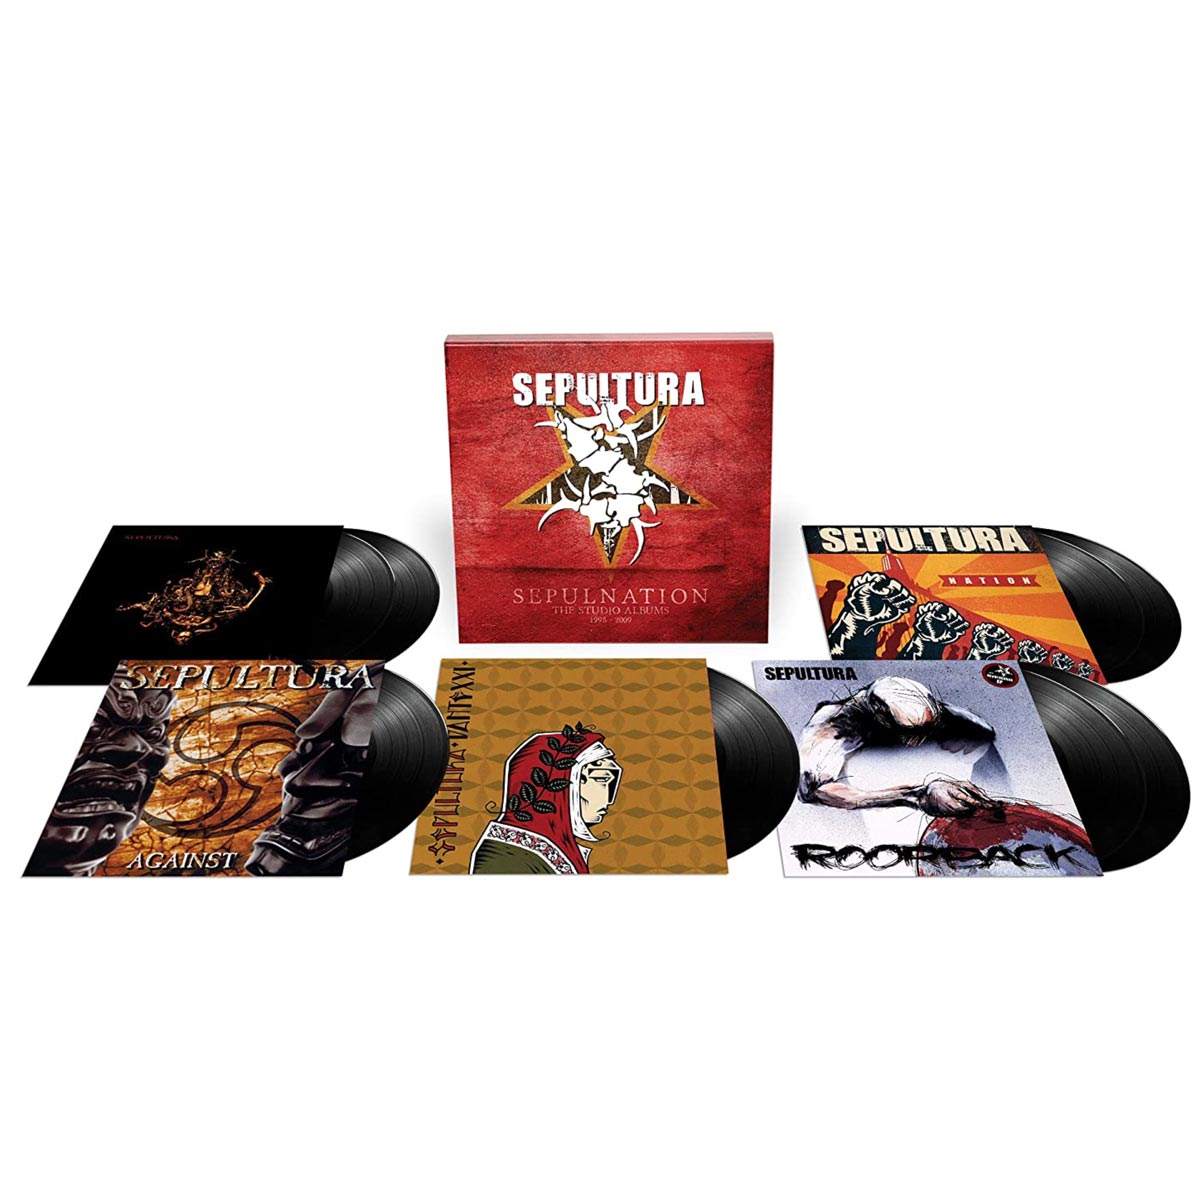 Sepultura - Sepulnation/Studio albums 1998-2009 - 8 x LP